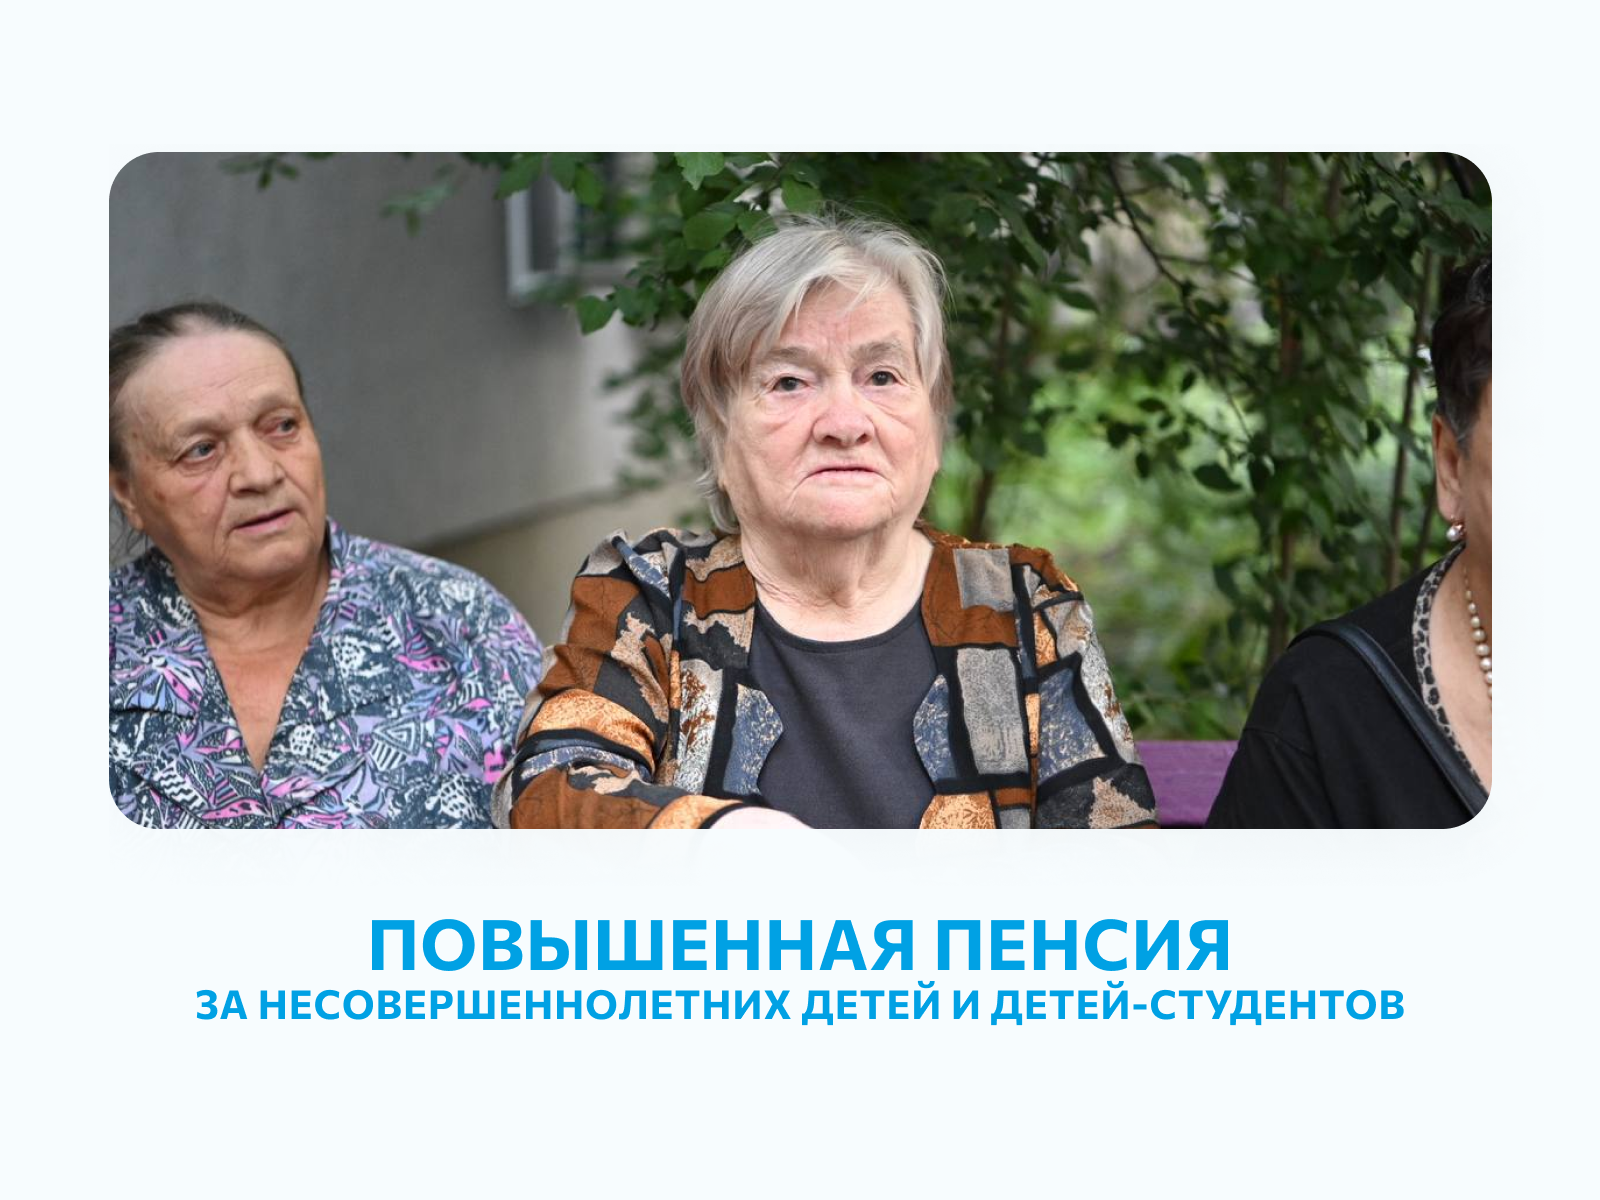 Более 15 тысяч родителей-пенсионеров Белгородской области получают повышенную пенсию за несовершеннолетних детей и детей-студентов.